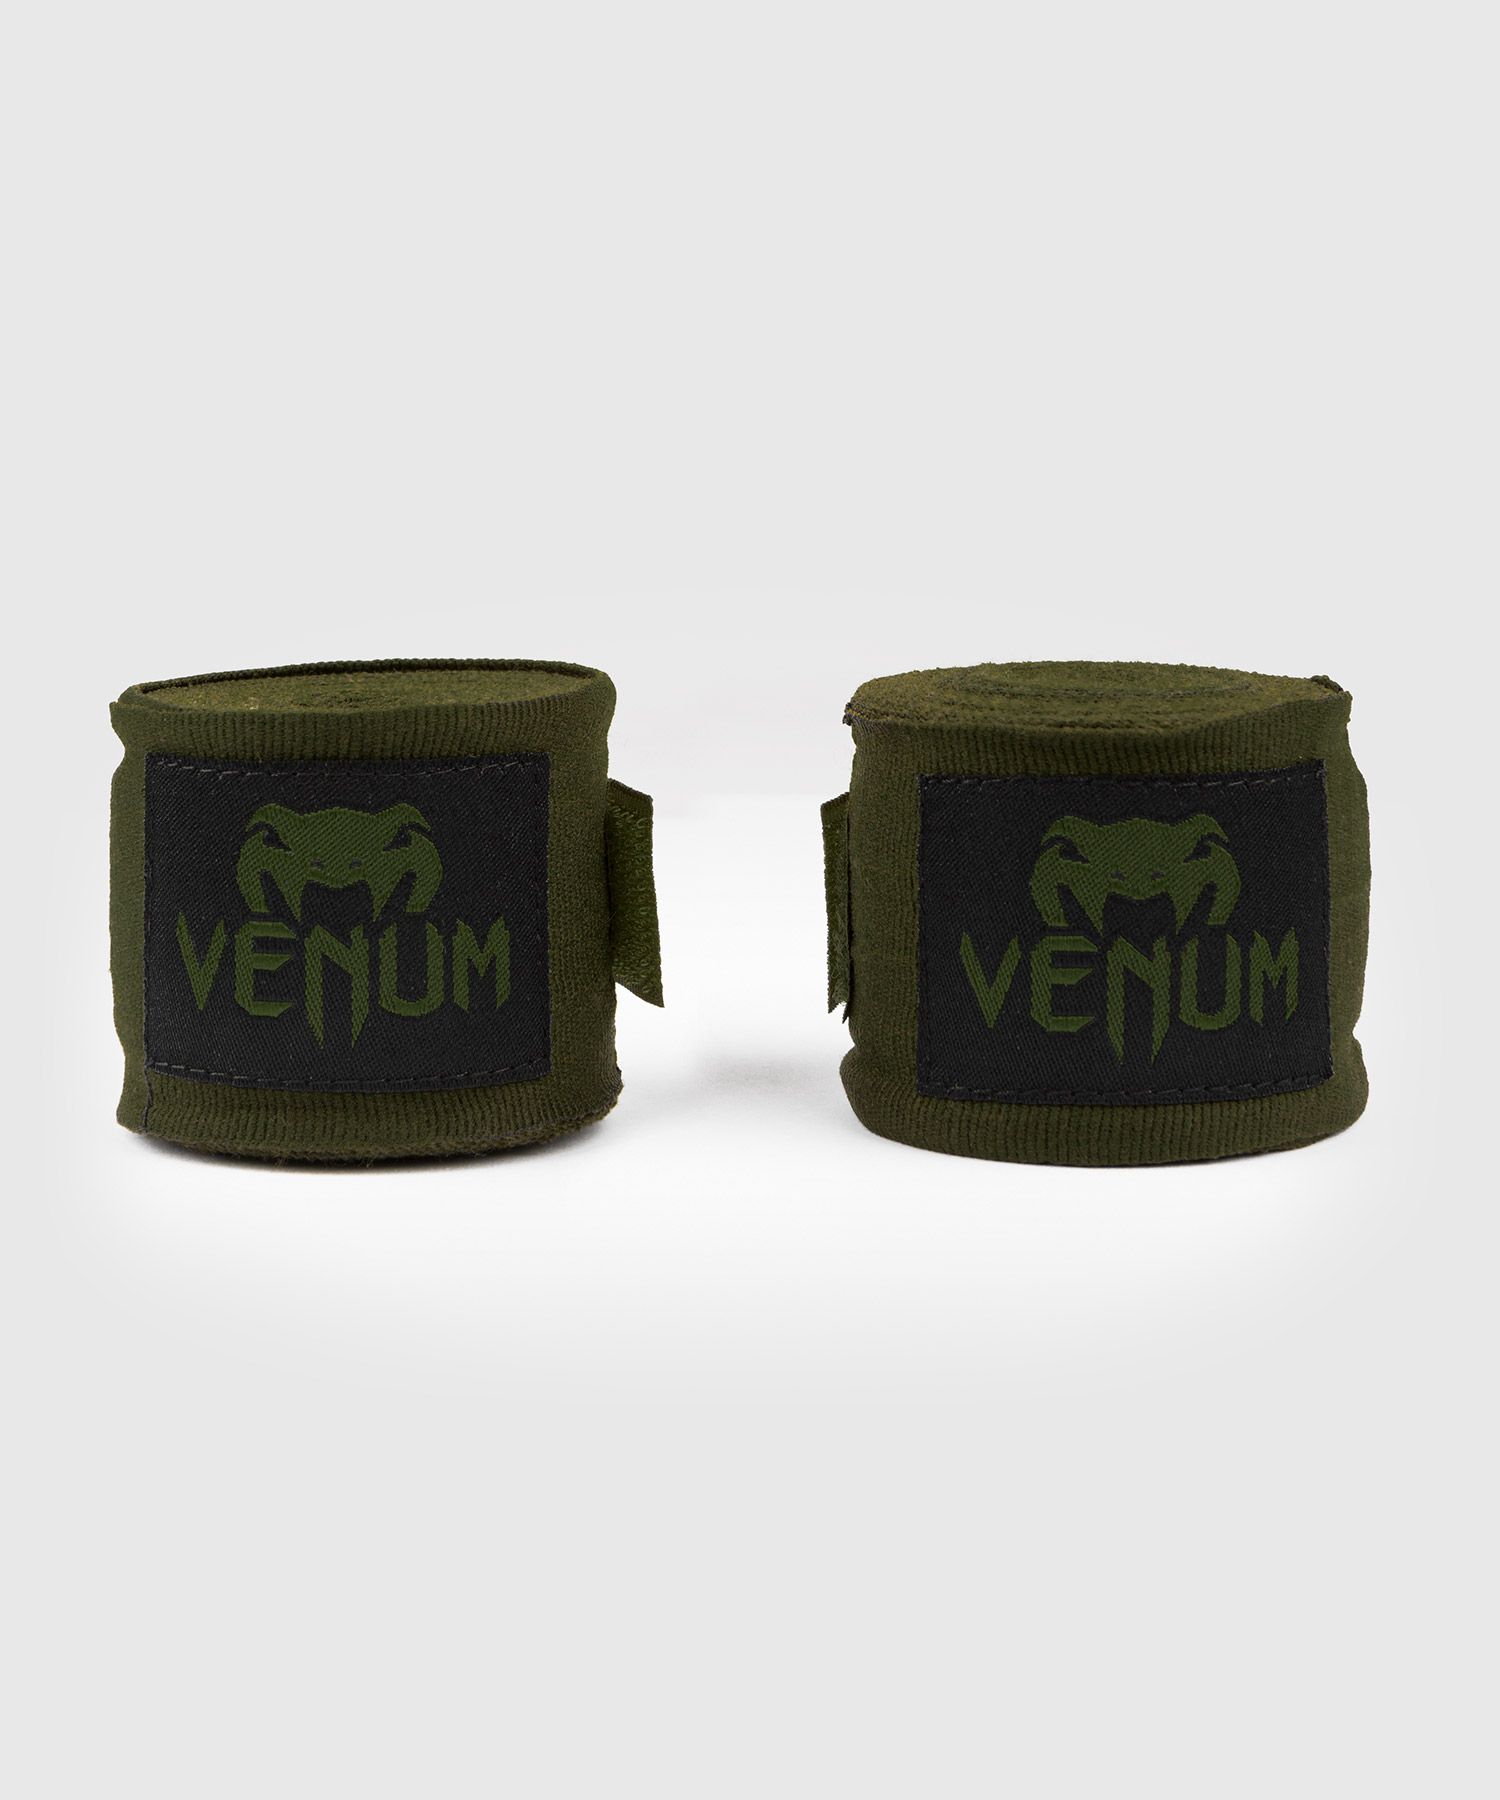 Venum Kontact ボクシングハンドラップ - 4.5m - カーキ/ブラック